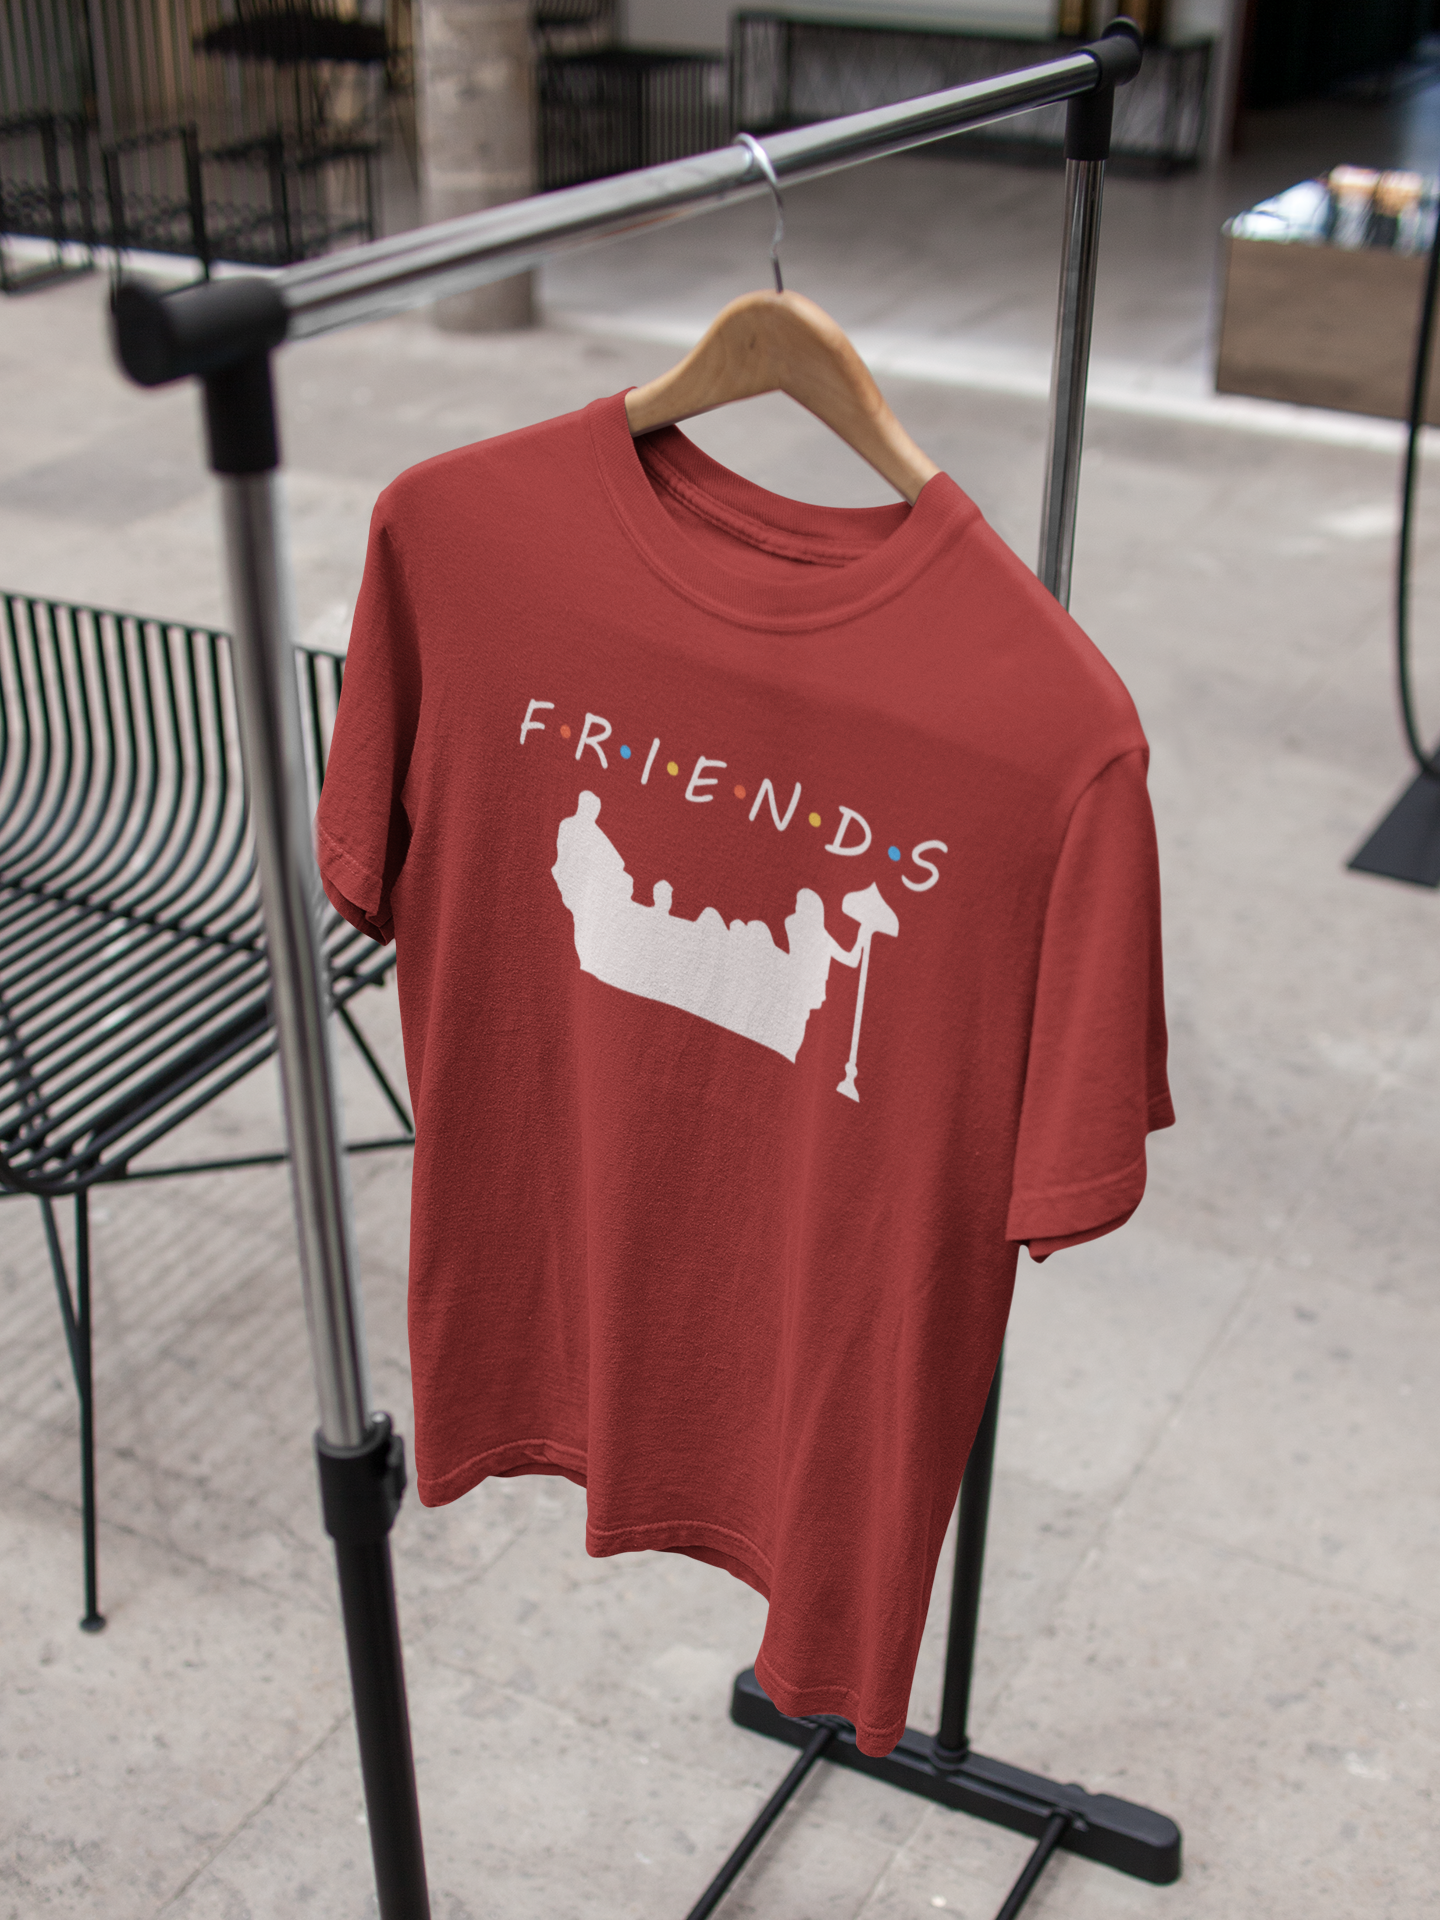 Friends Web Series Mens Half Sleeves T-shirt- FunkyTeesClub